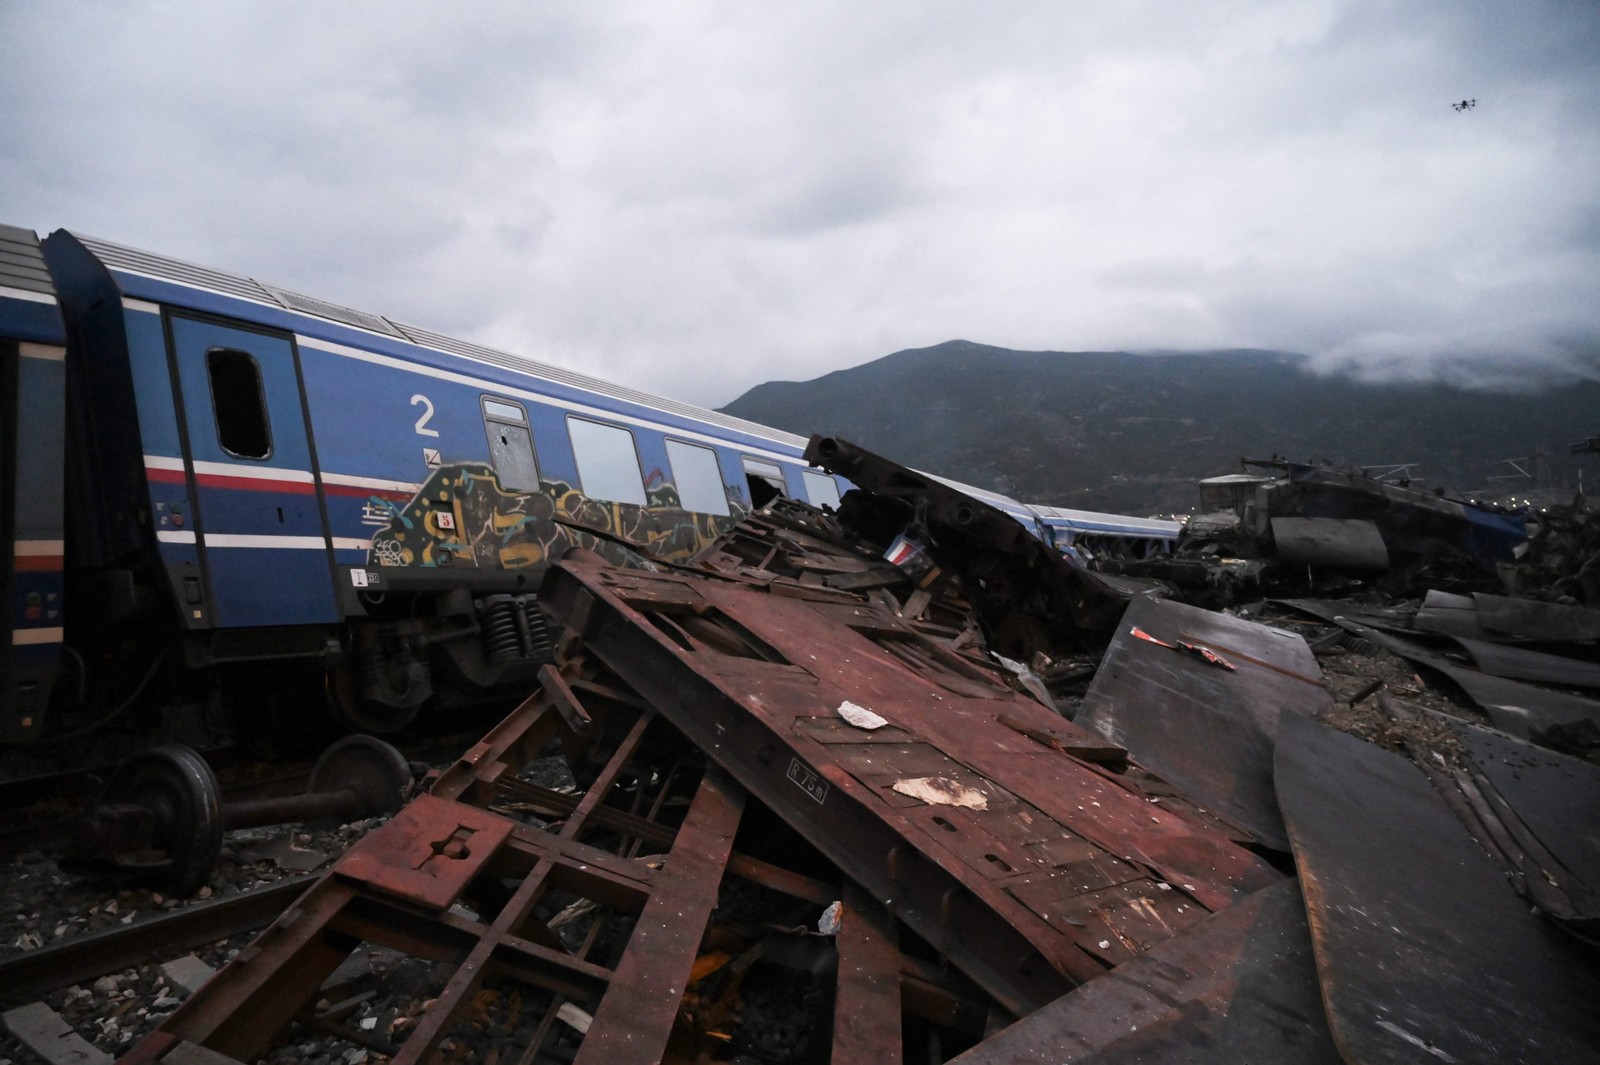 Vagões destruídos são vistos perto dos trilhos após um acidente de trem no vale Tempi, perto de Lárissa, Grécia, em 1º de março de 2023 — Foto: Sakis Mitrolidis / AFP